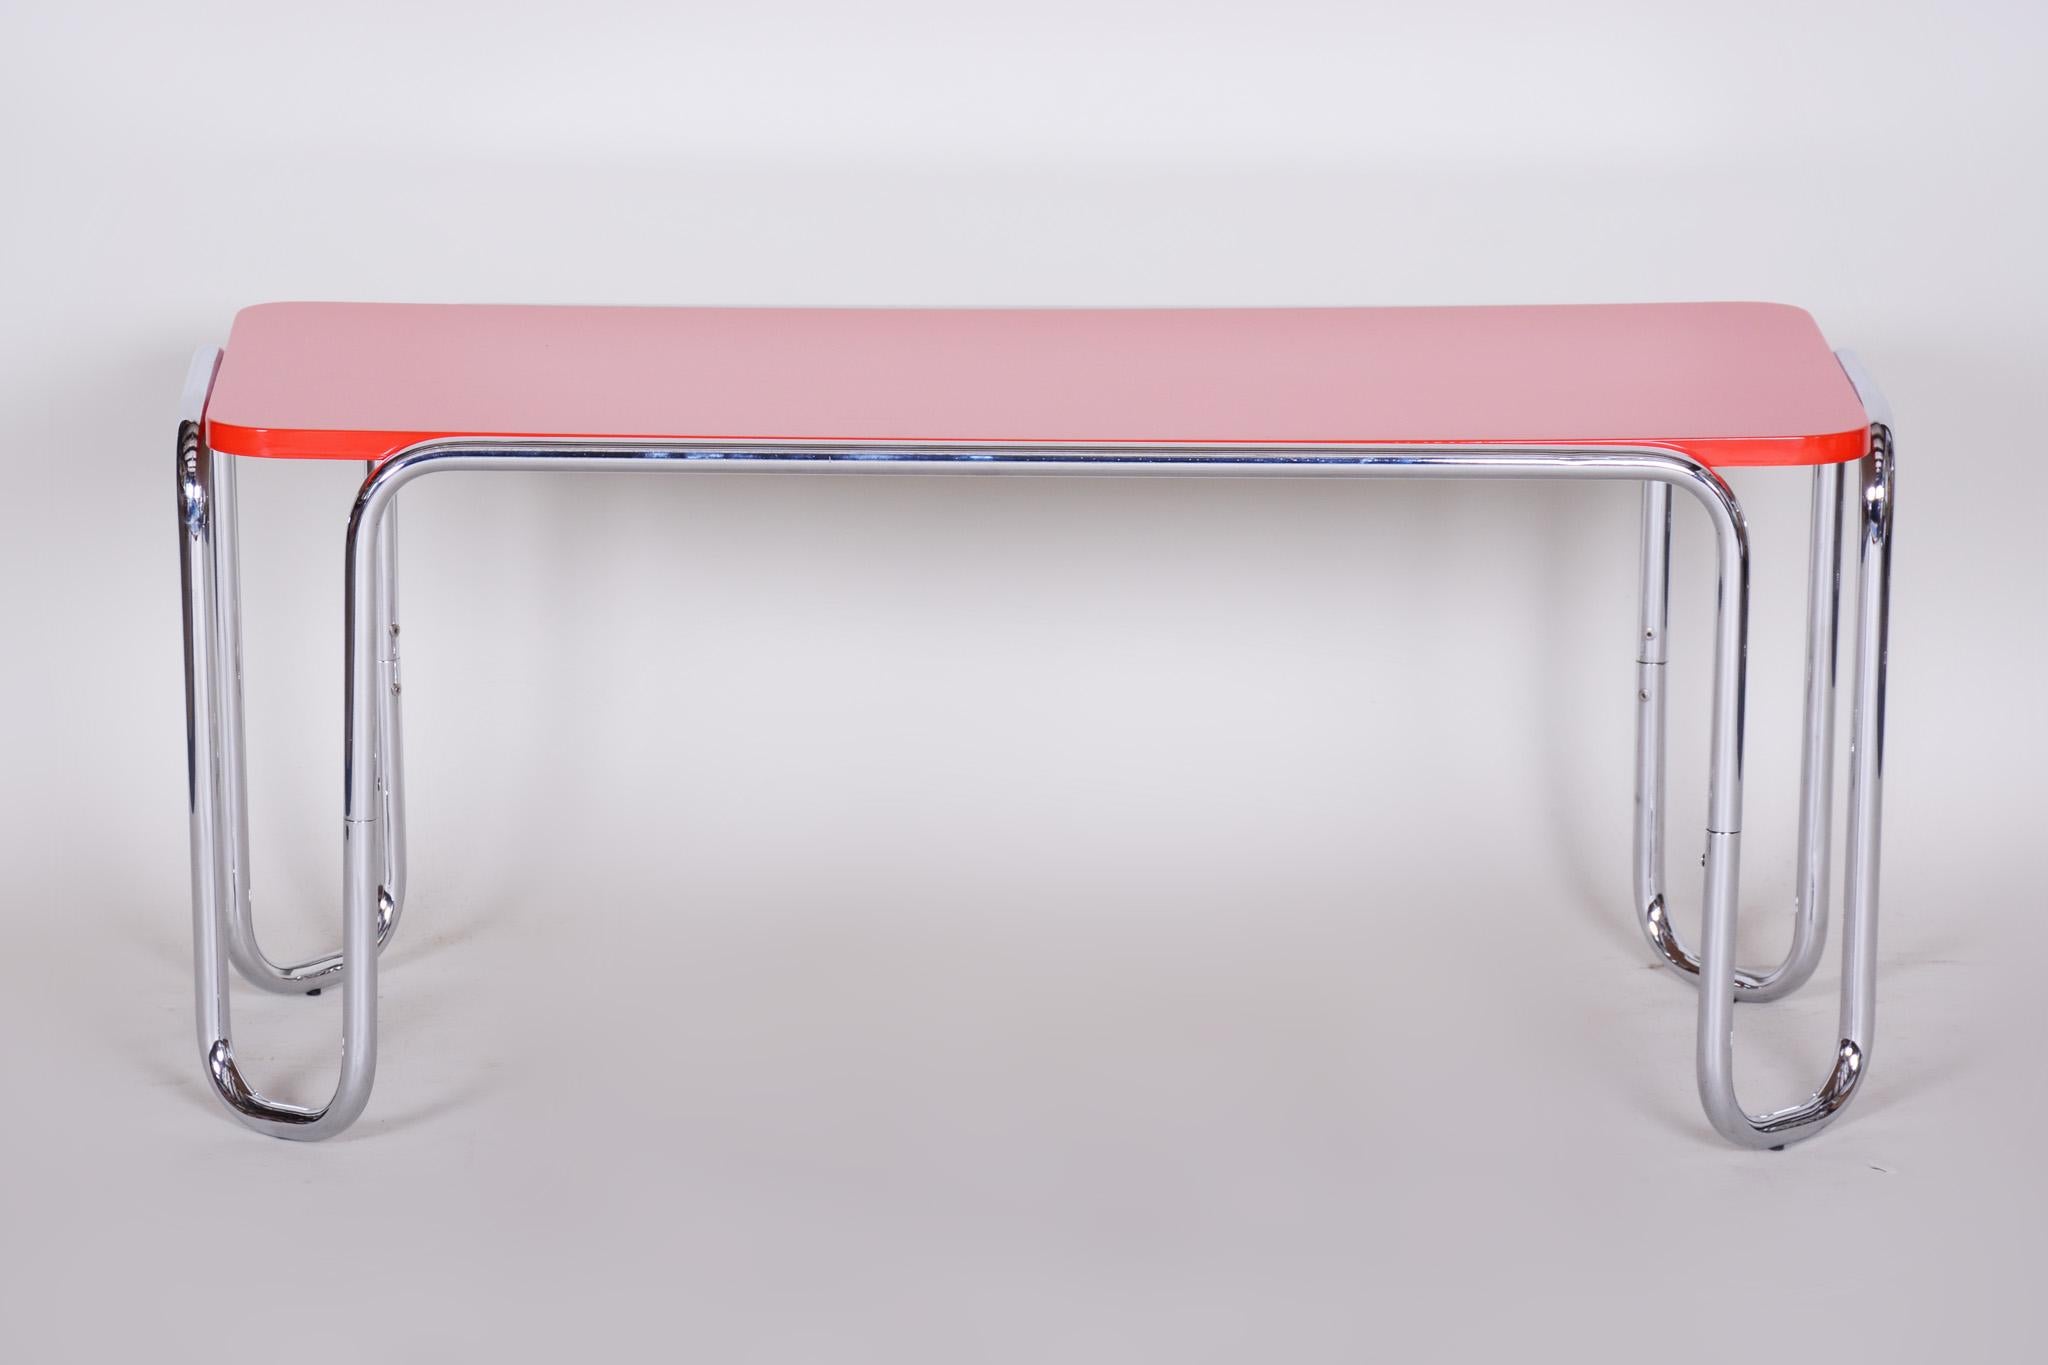 Petite table chromée Bauhaus
Période : 1950-1959
Matière : Chrome et bois laqué
Source : Tchèque.